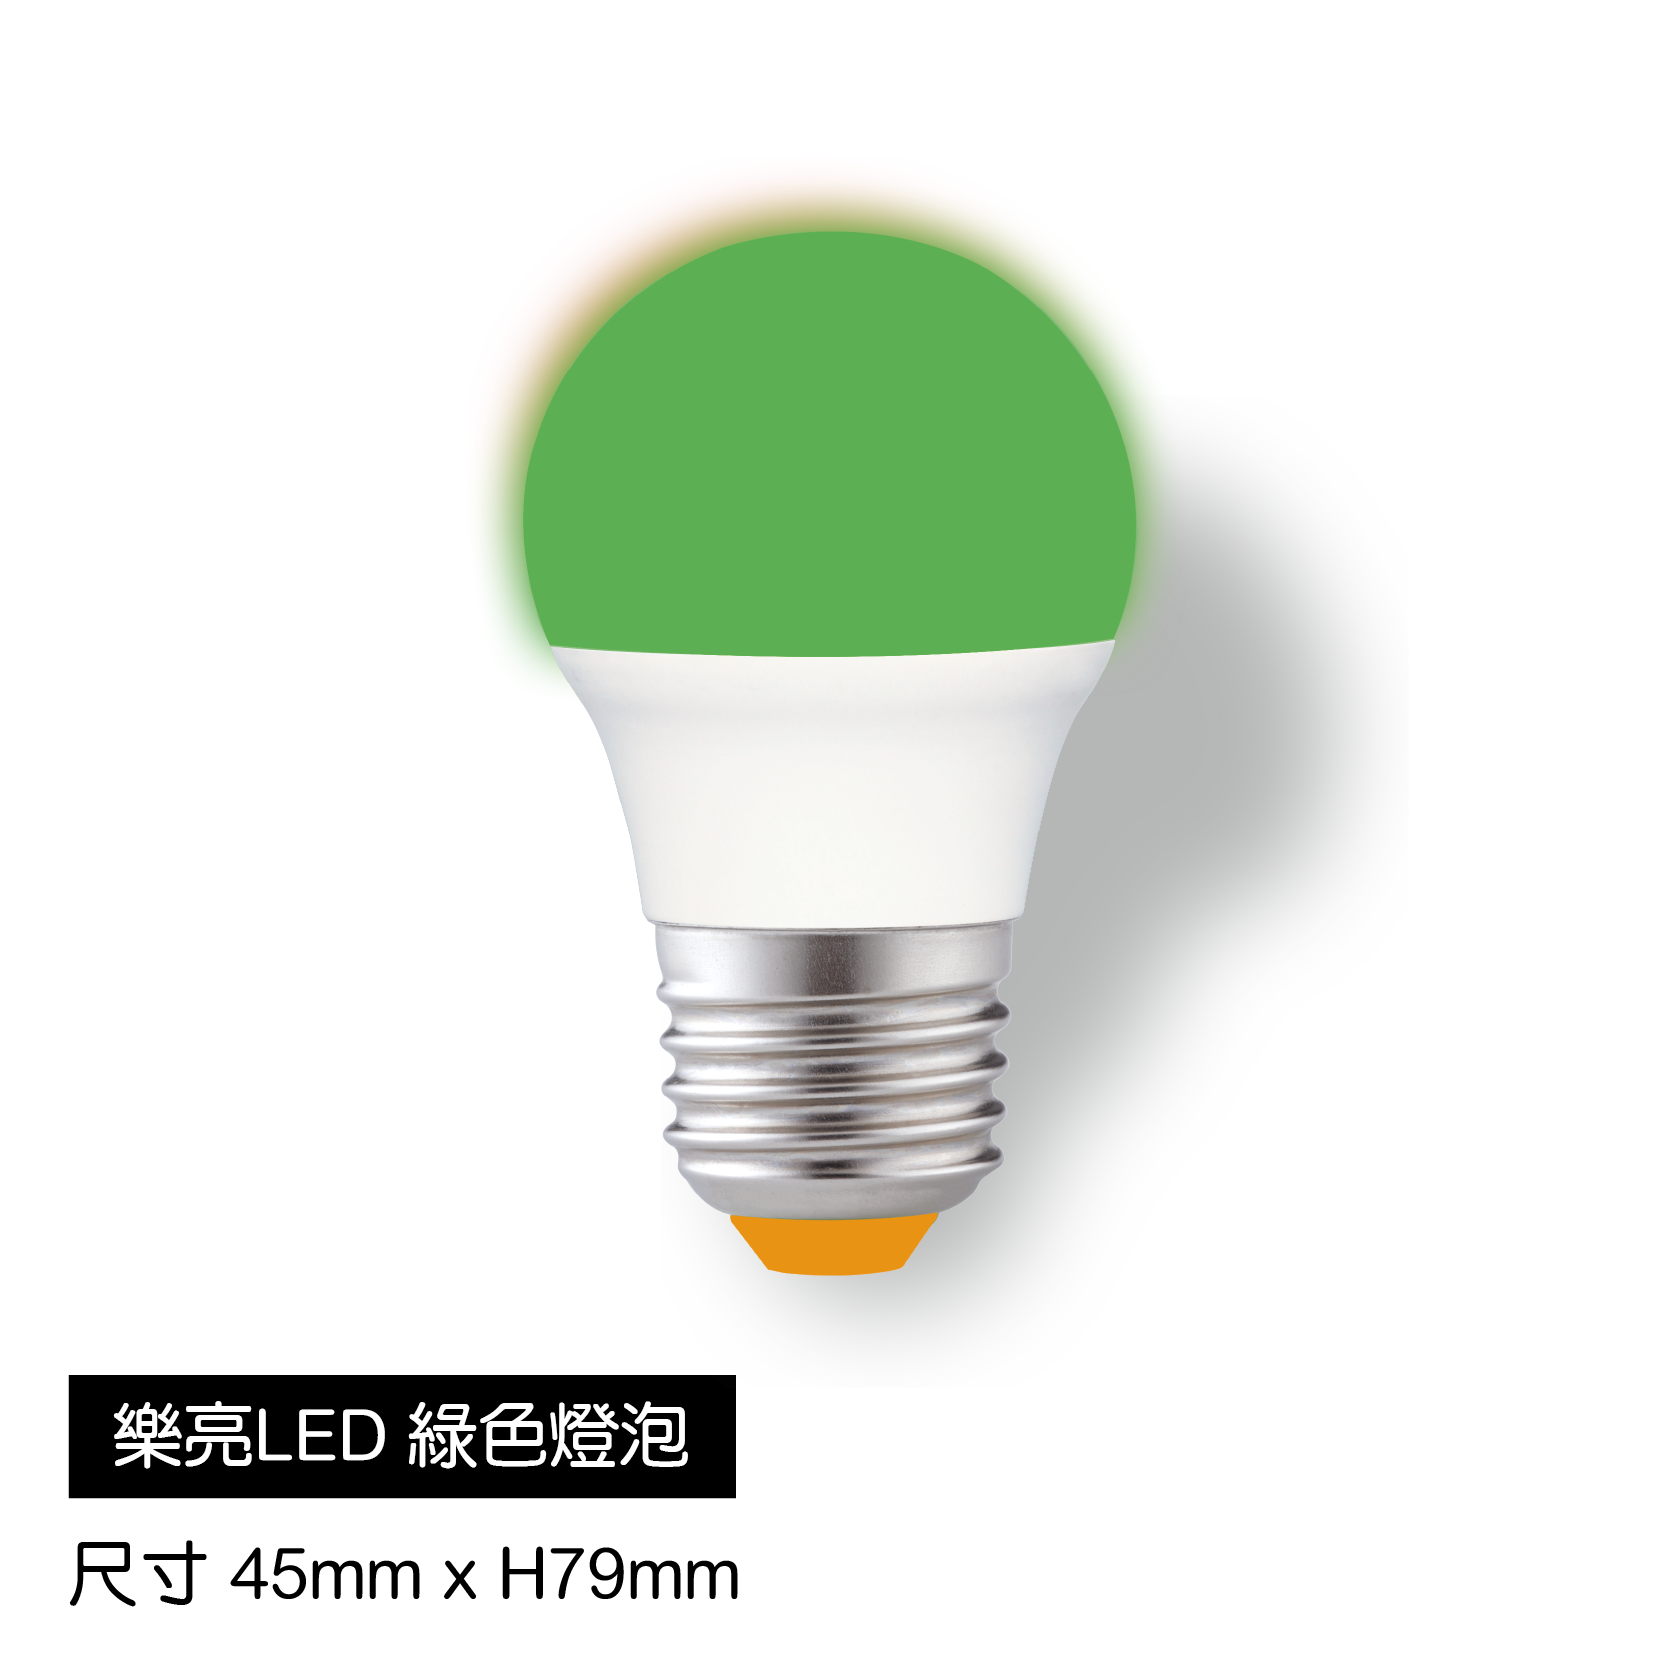 樂亮LED綠燈泡